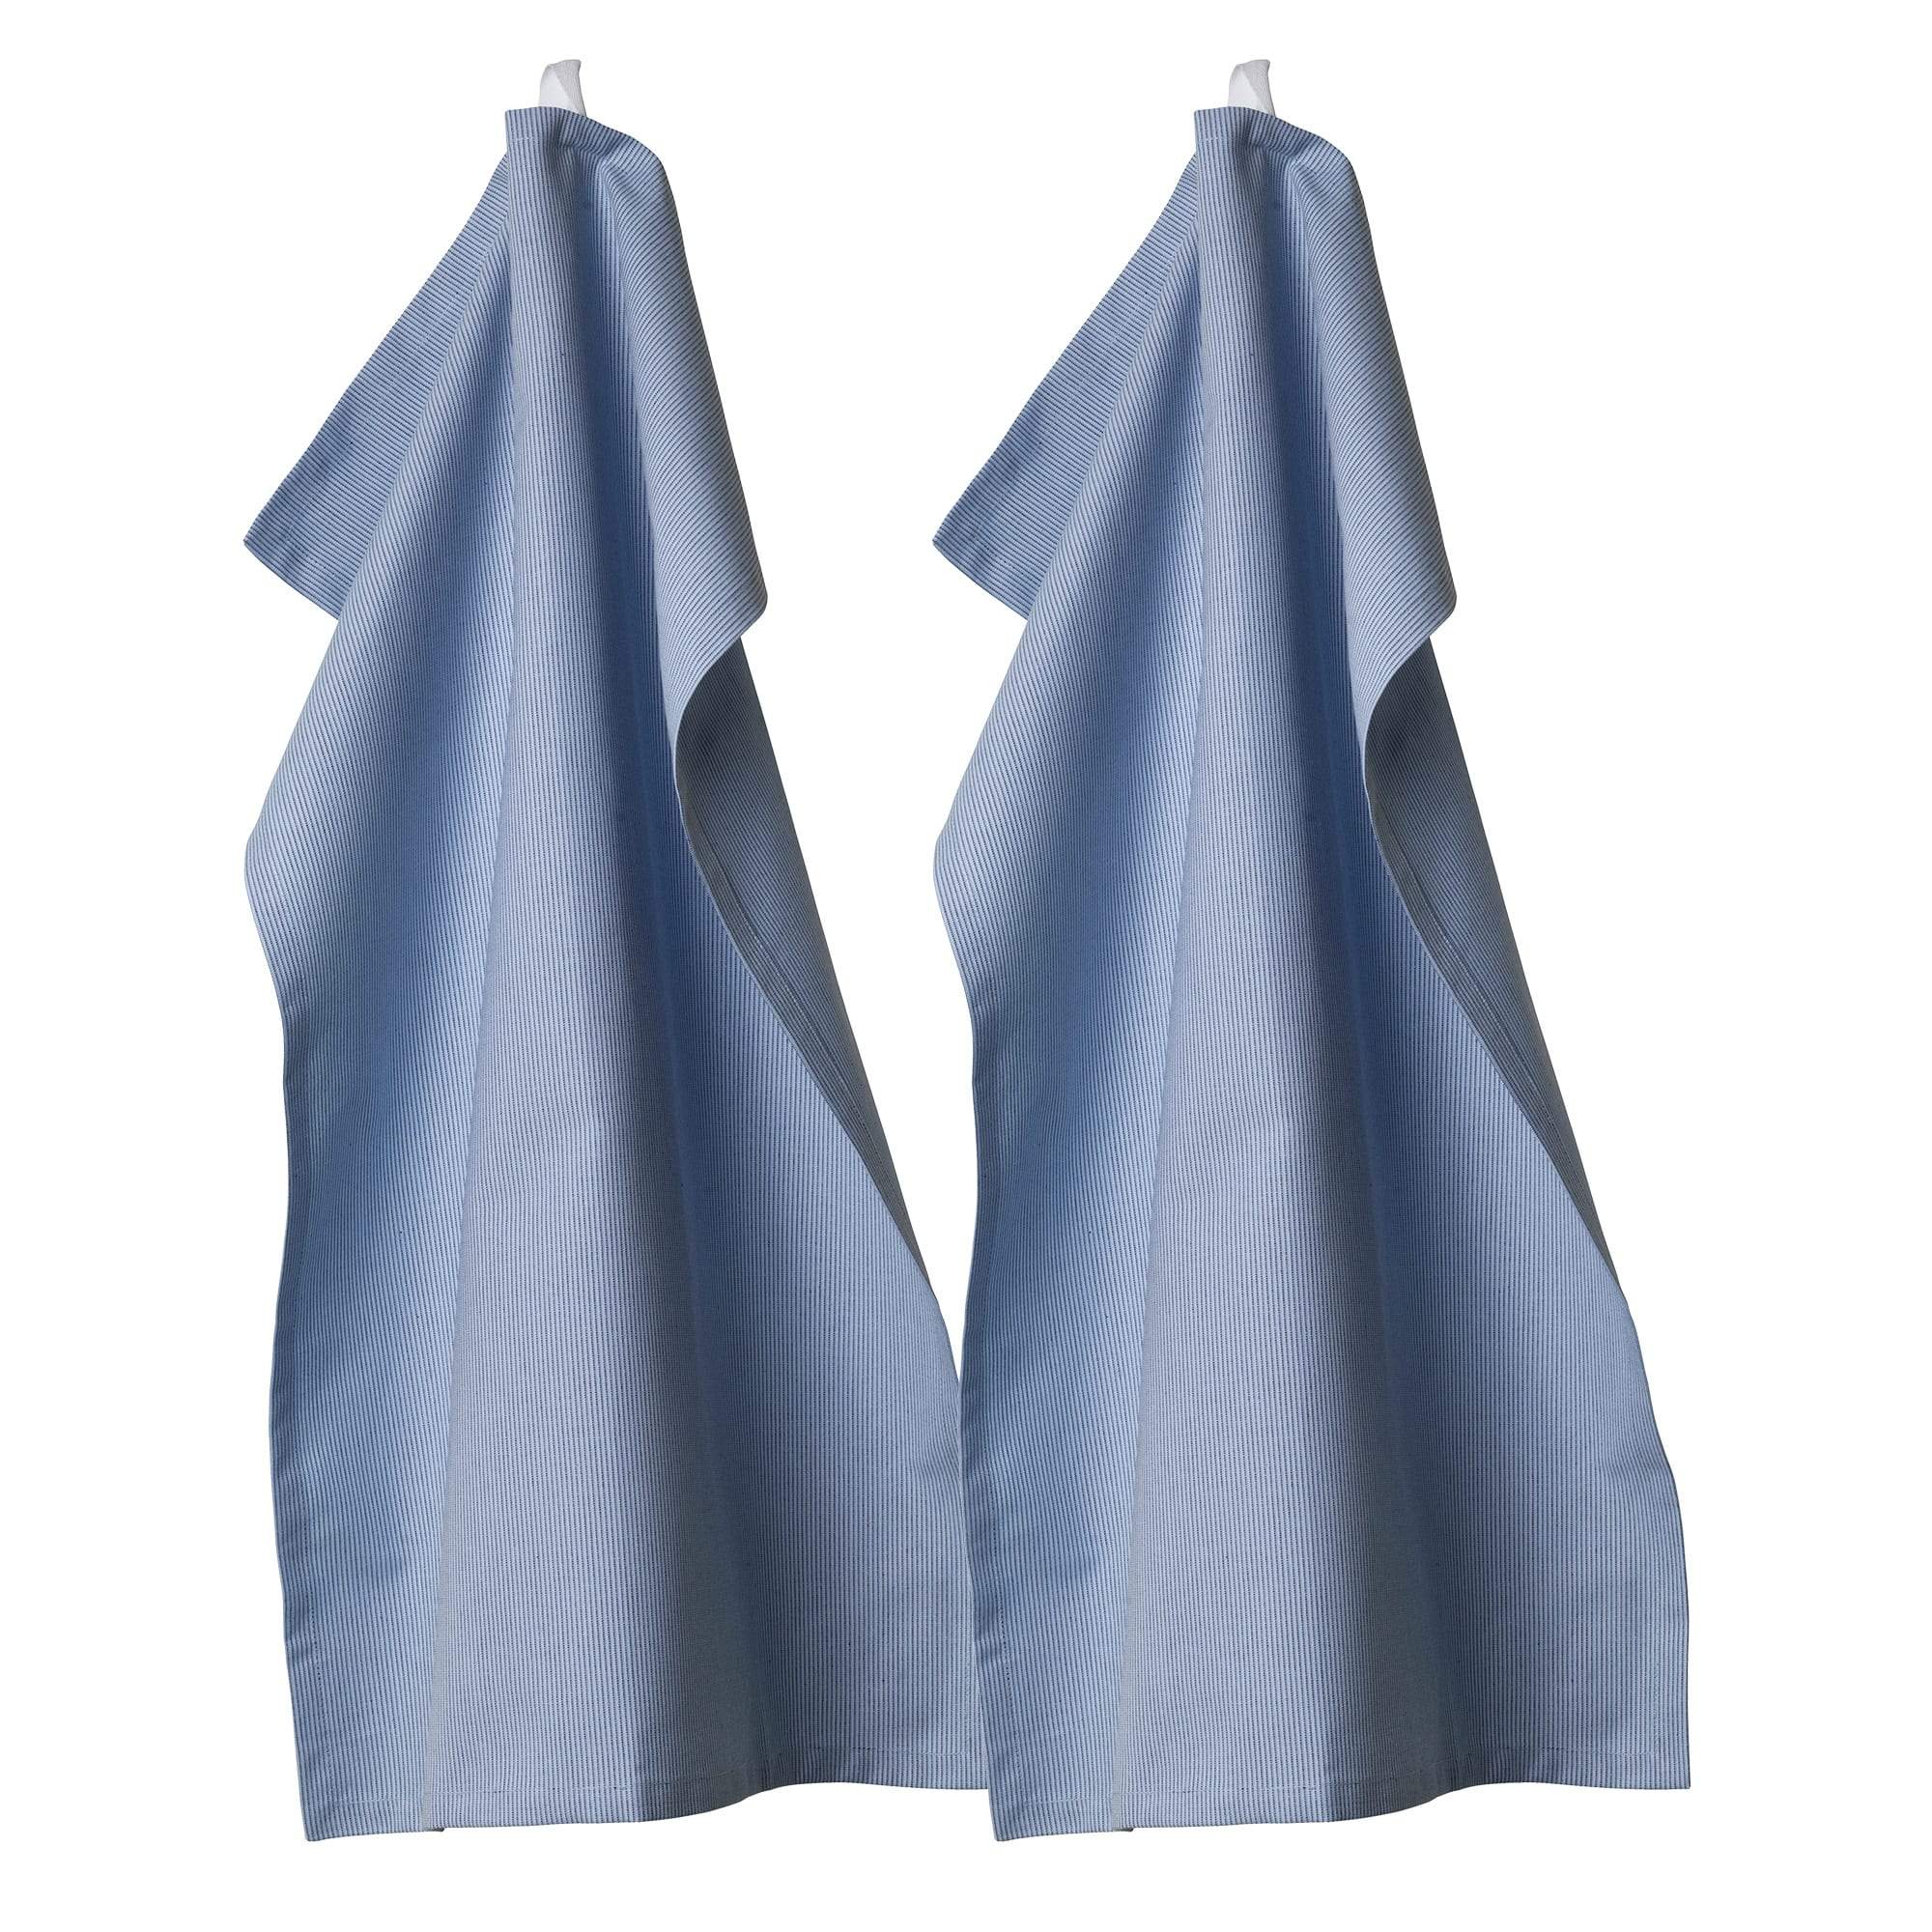 Fdb Møbler R19 Colorline Tea Towels Medium Blue, 2 Pcs.